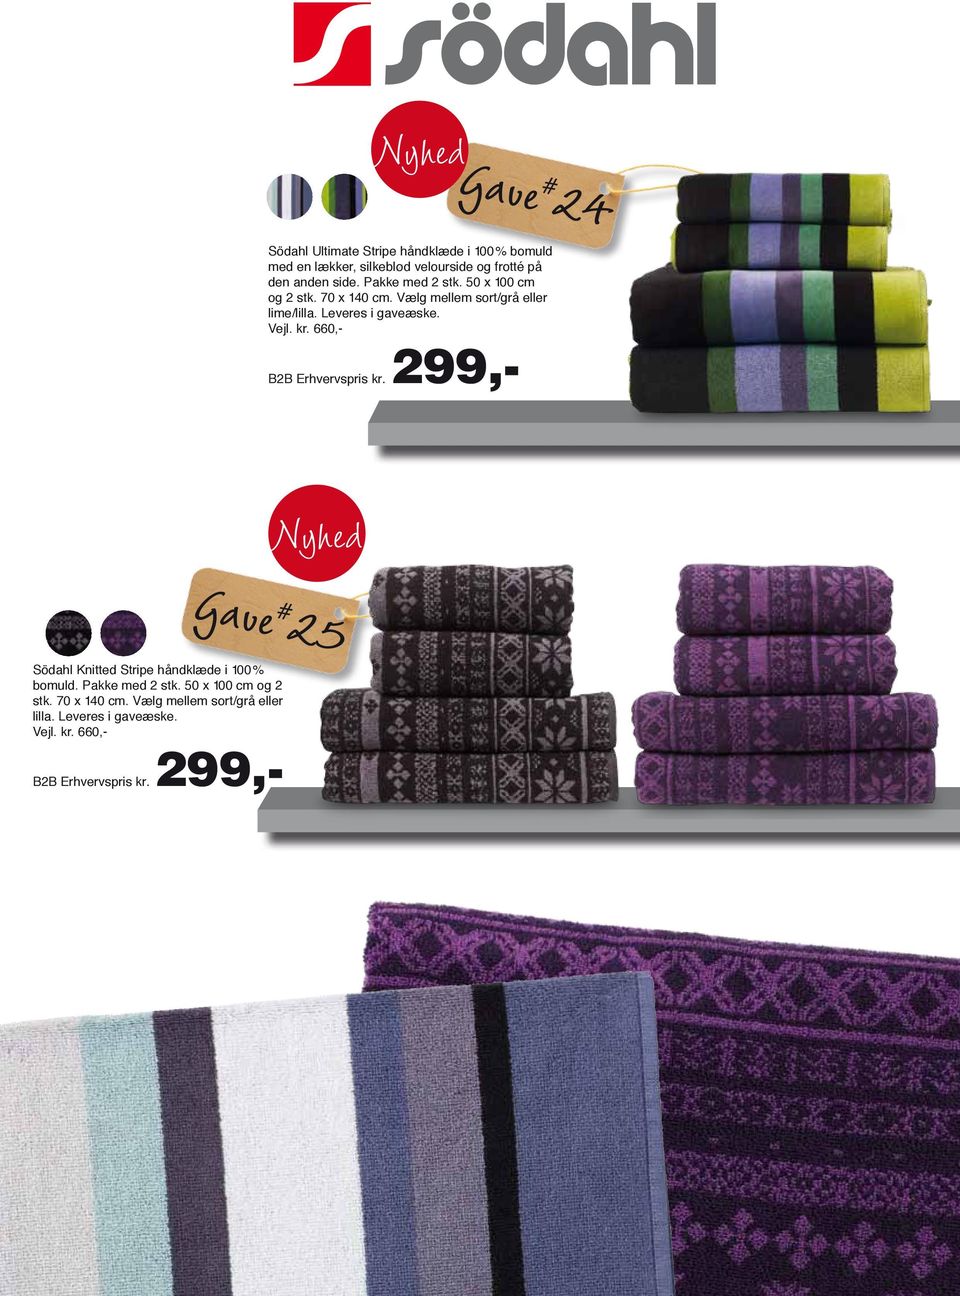 660,- B2B Erhvervspris kr. 299,- Gave # 25 Södahl Knitted Stripe håndklæde i 100% bomuld. Pakke med 2 stk.